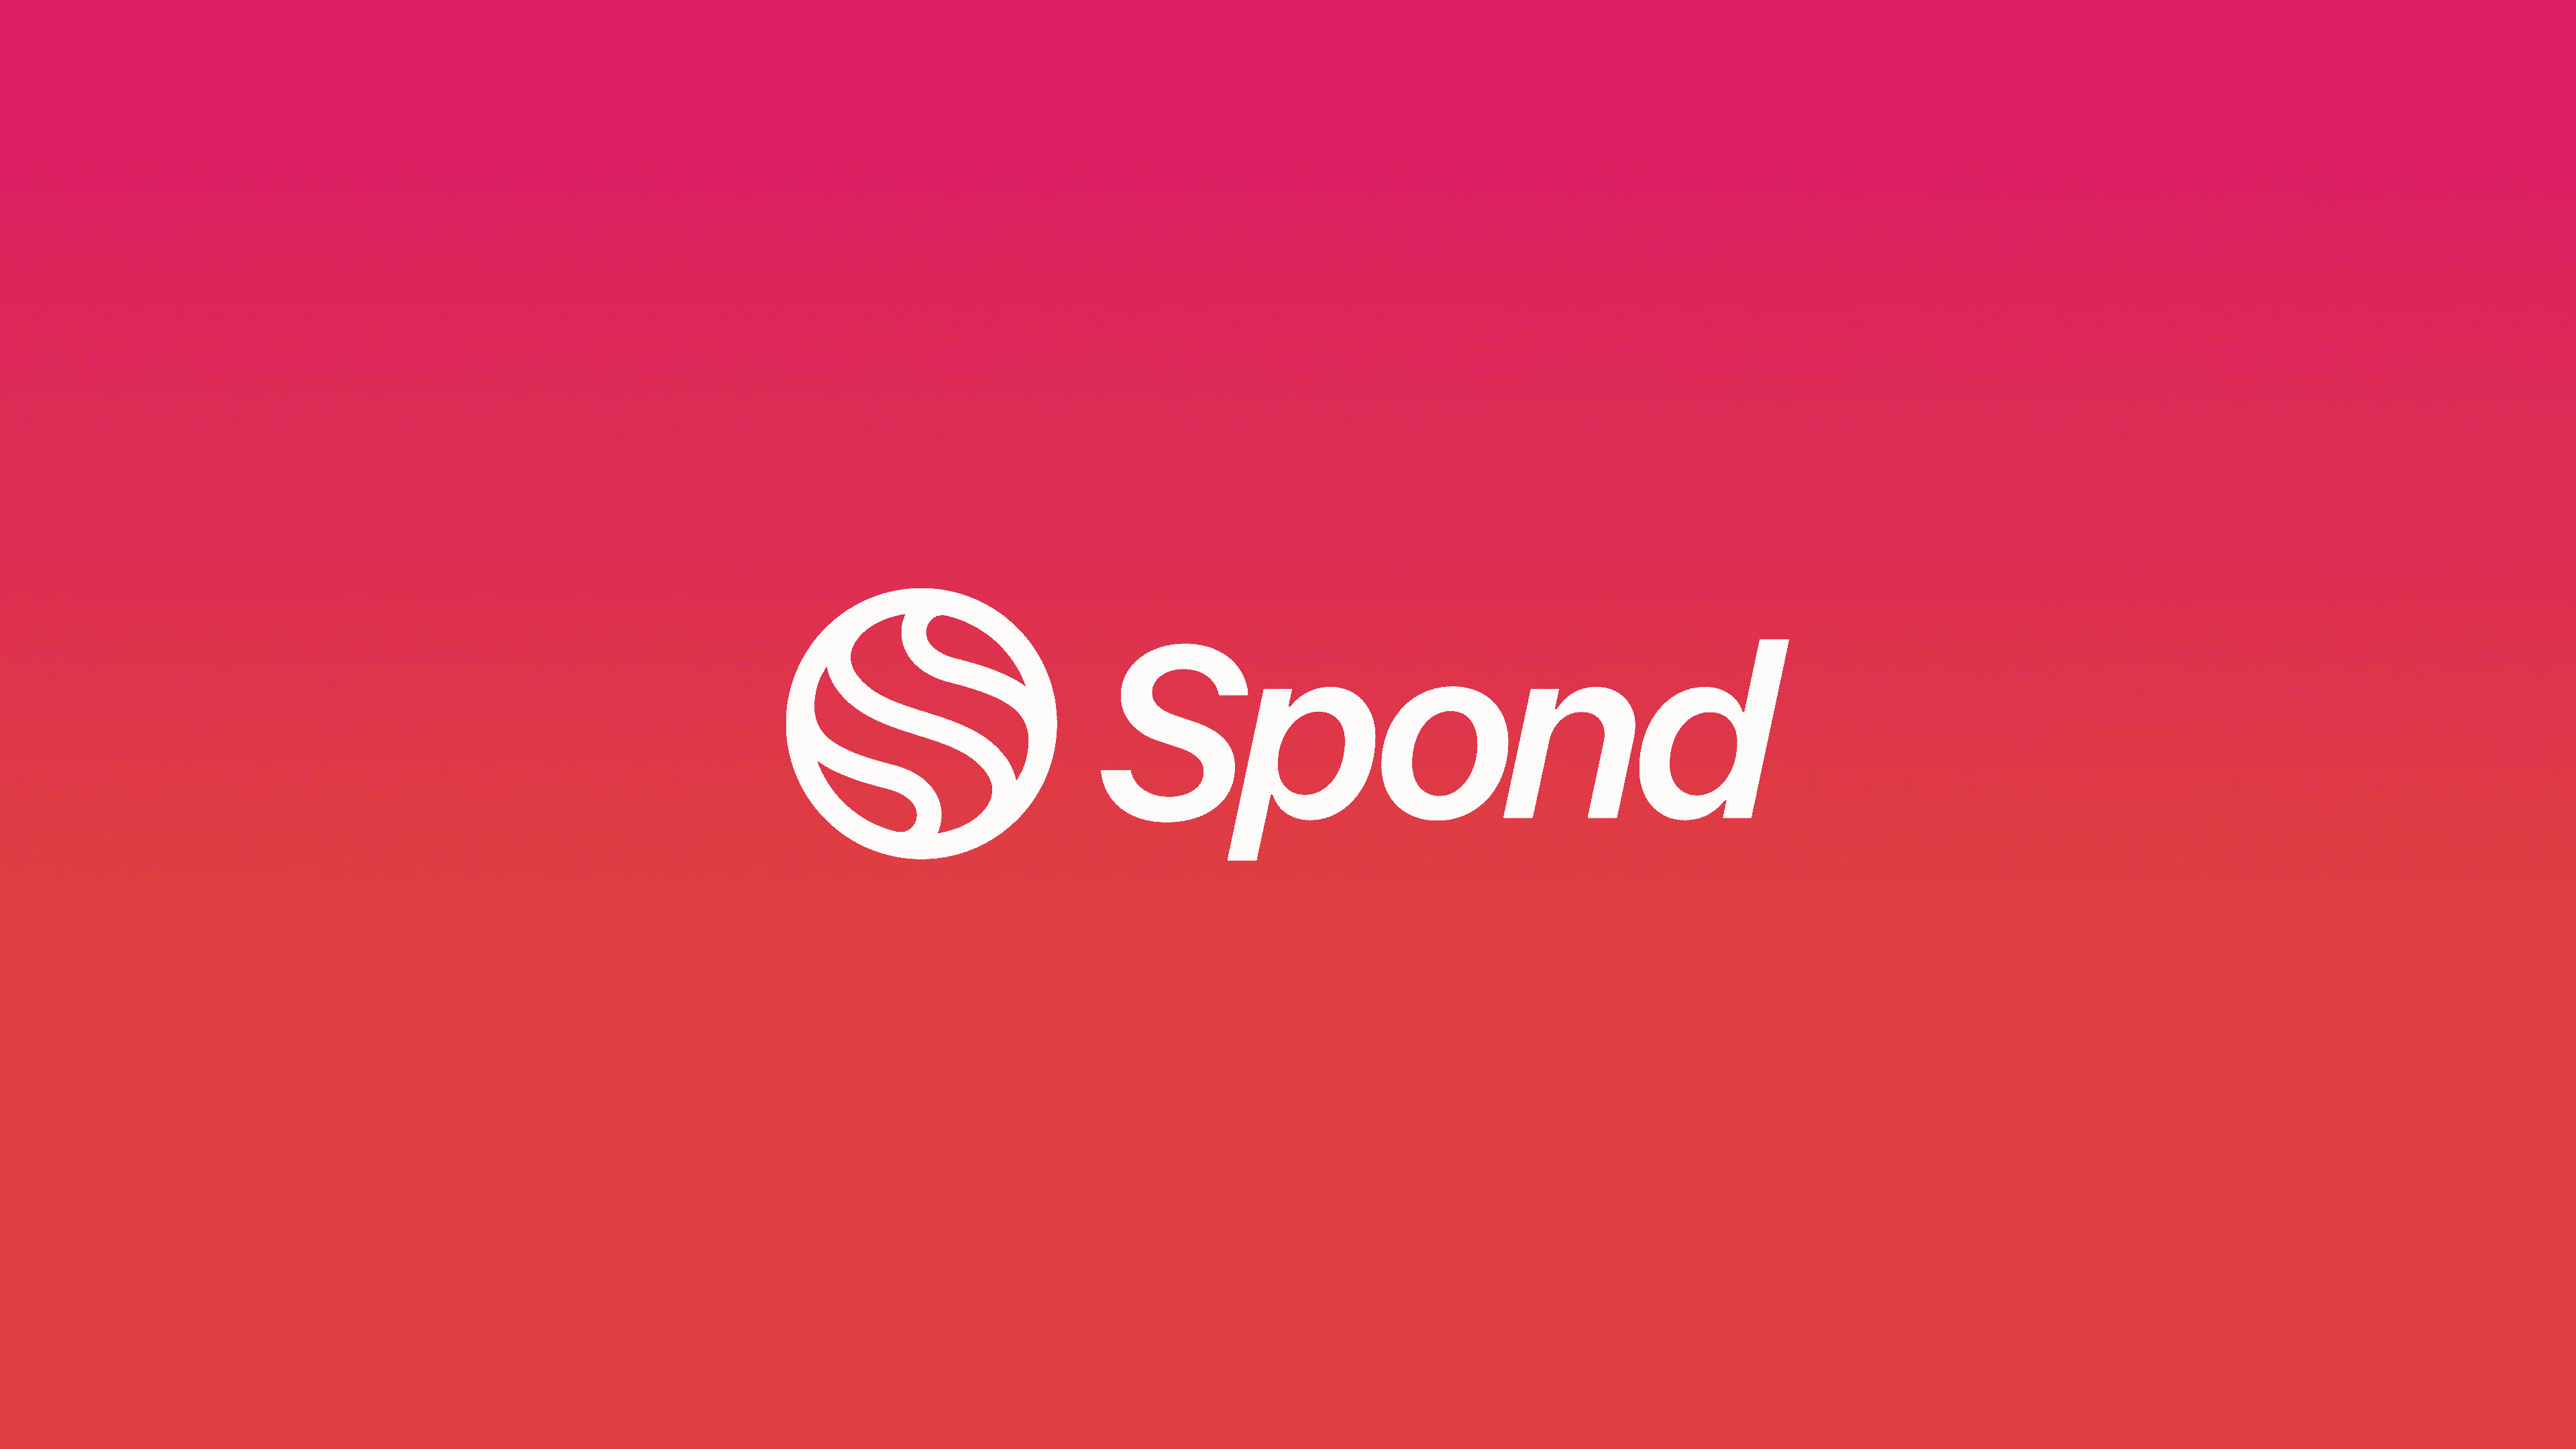 (c) Spond.com